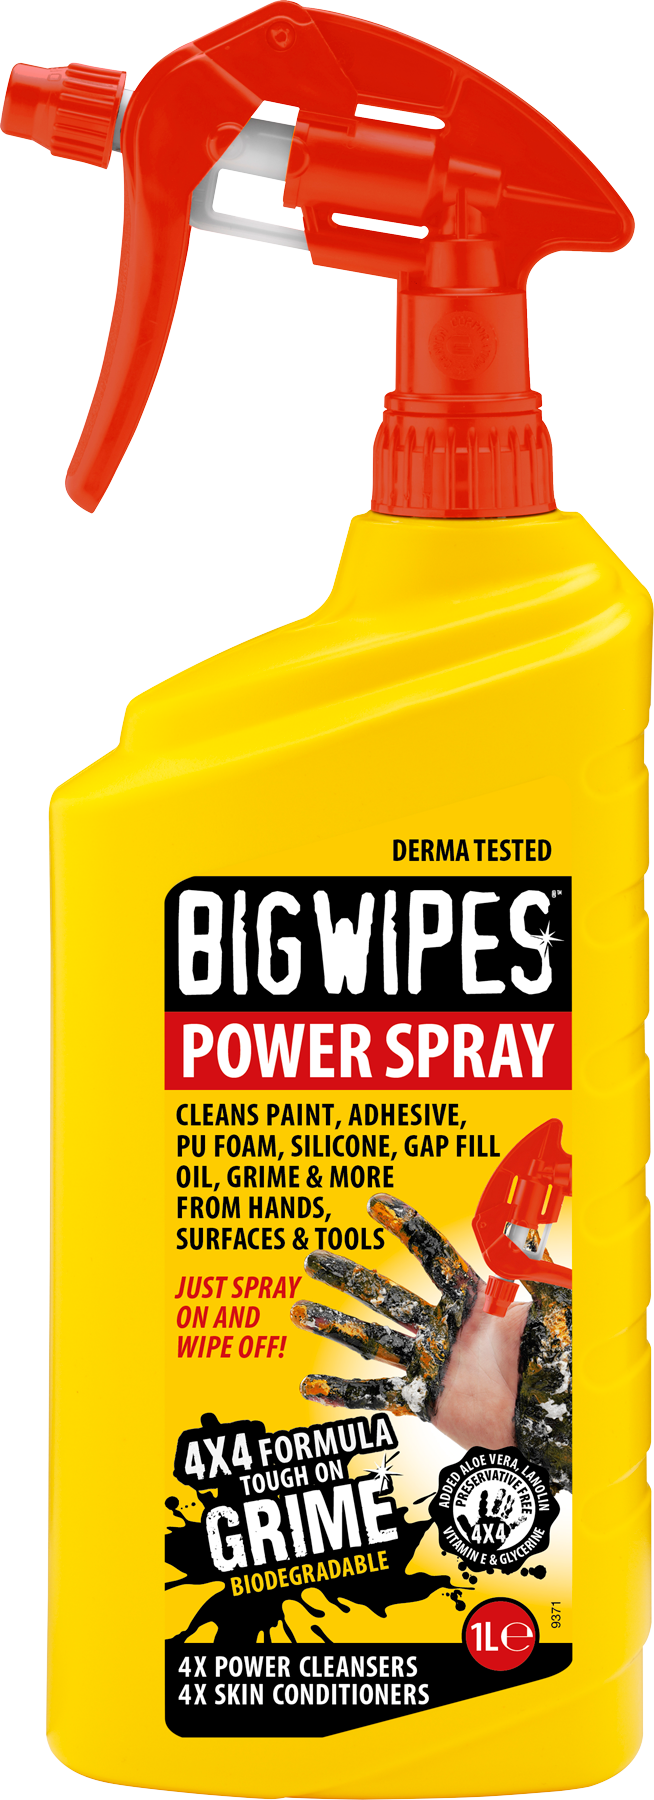 Big Wipes Power Spray 1 Liter